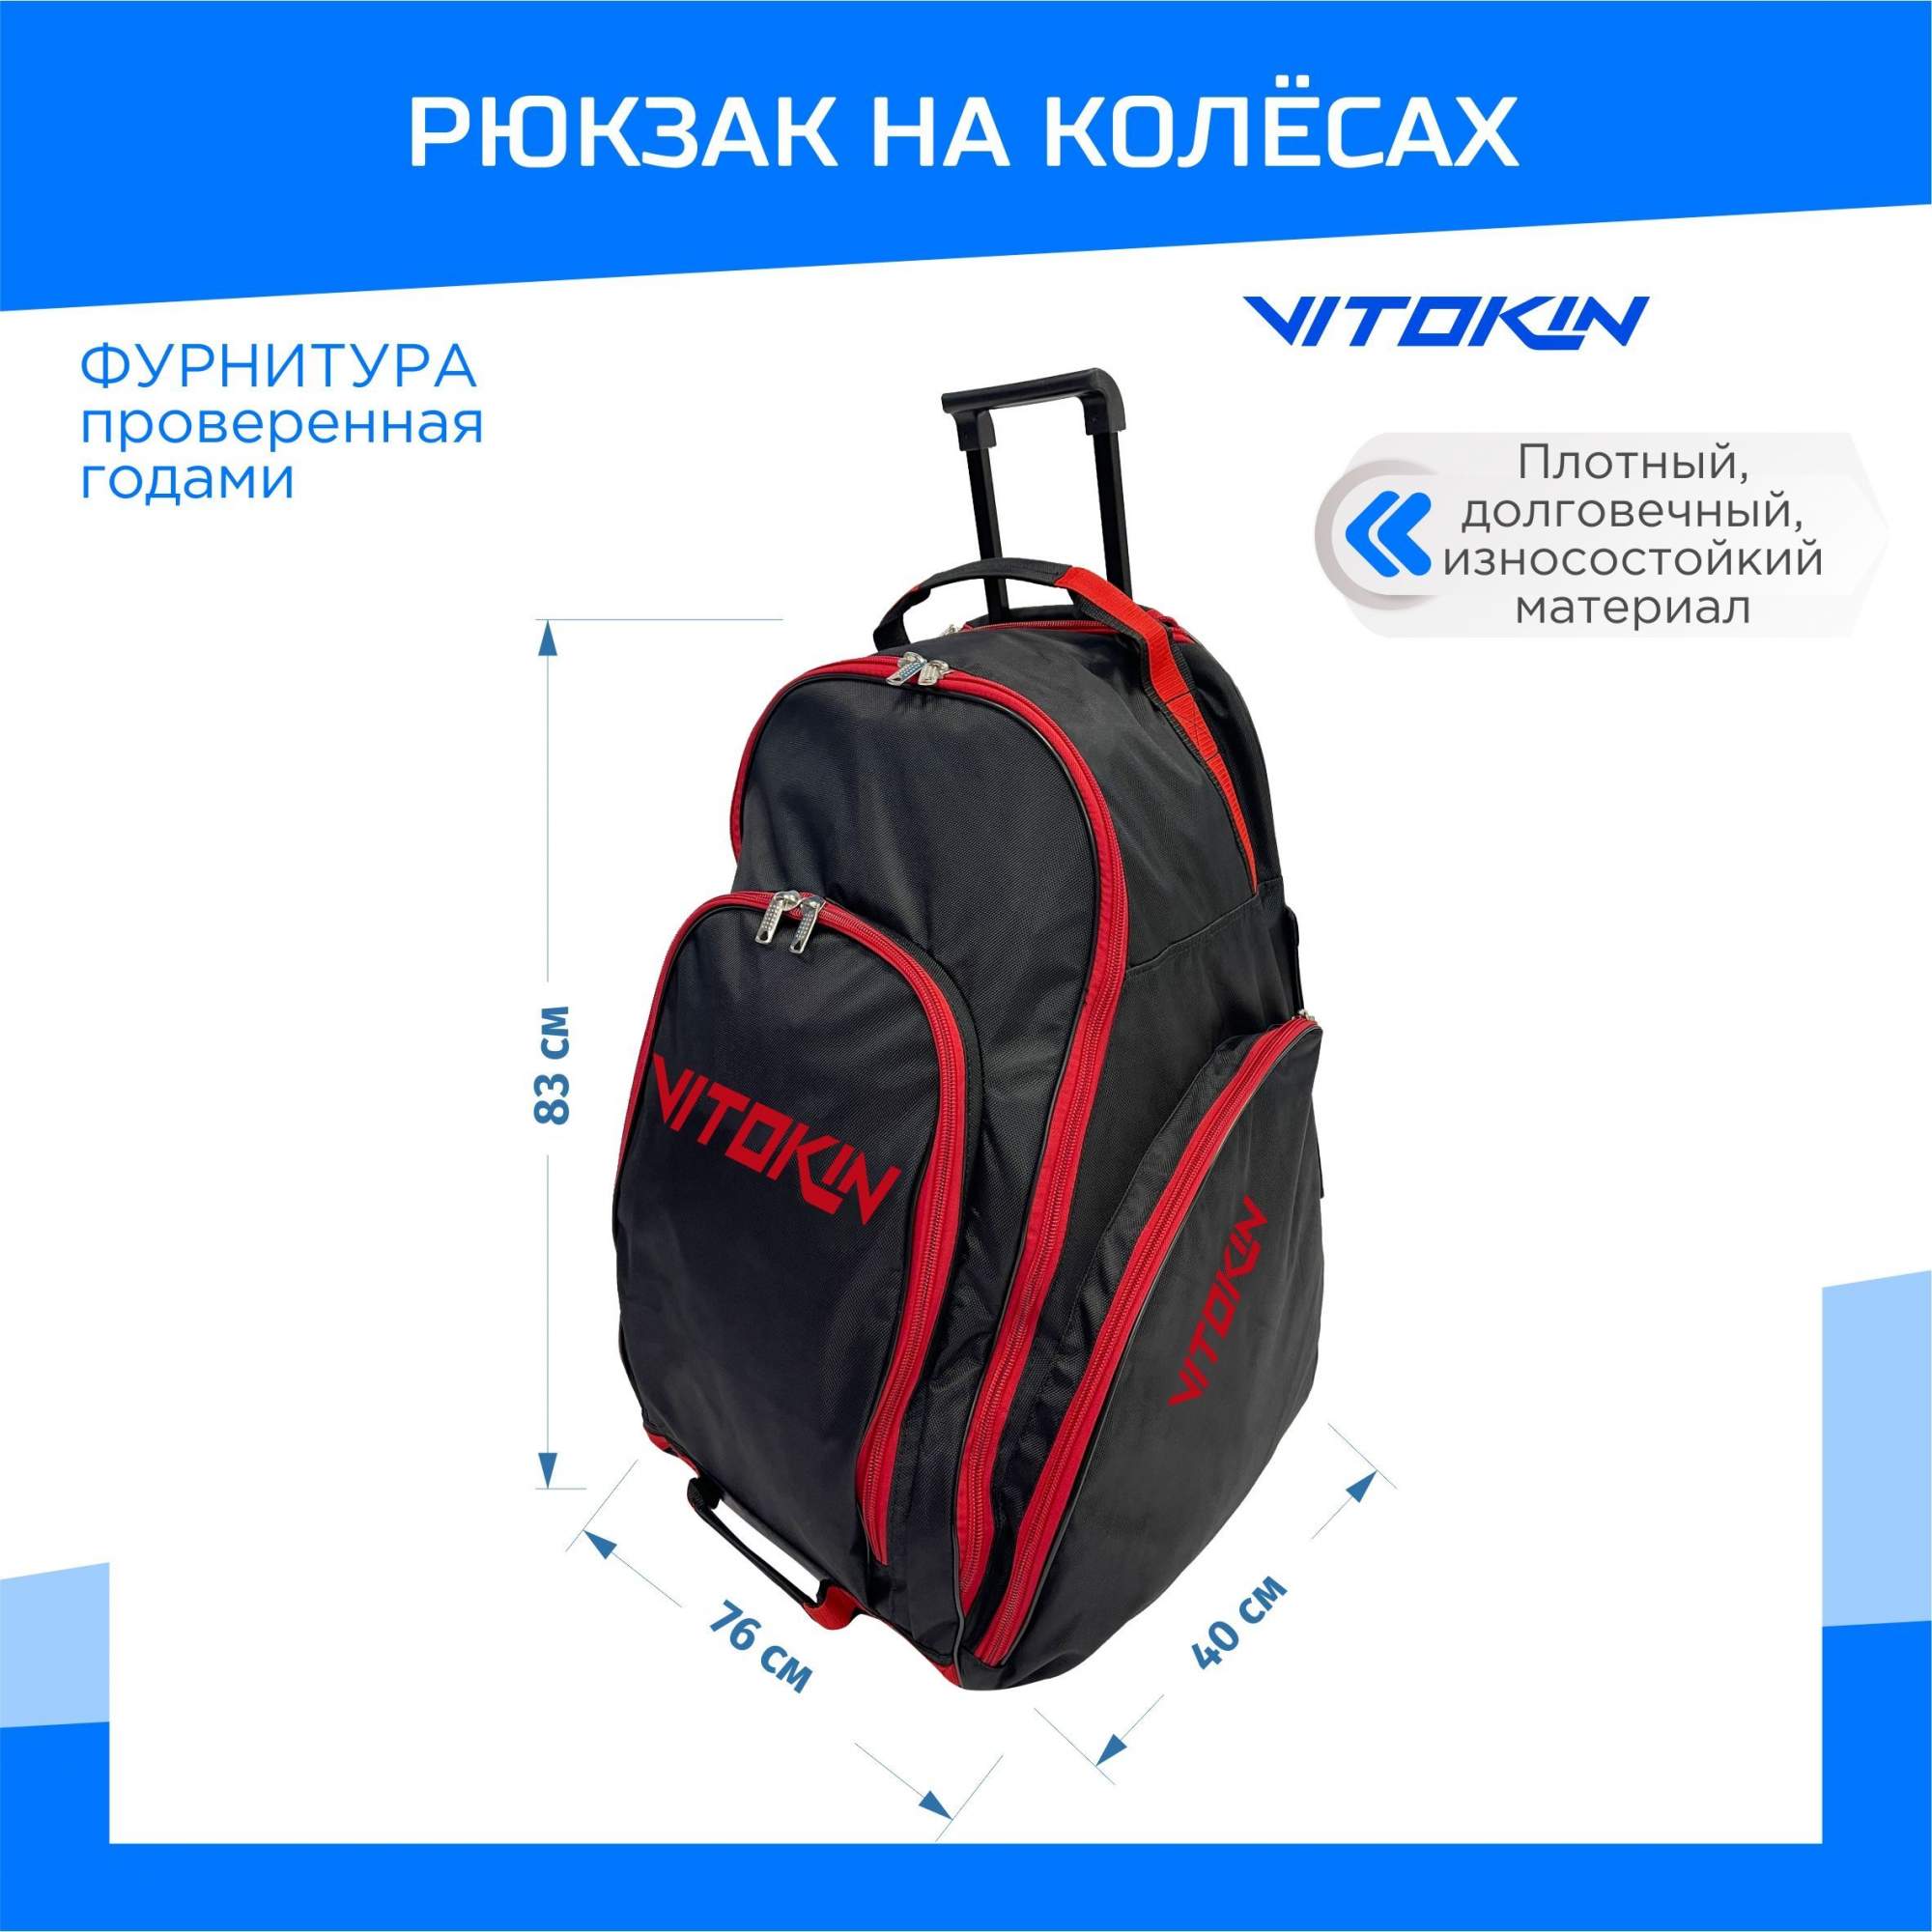 Рюкзак хоккейный VITOKIN SR 33 на колесах с выдвижной ручкой, черный с красным